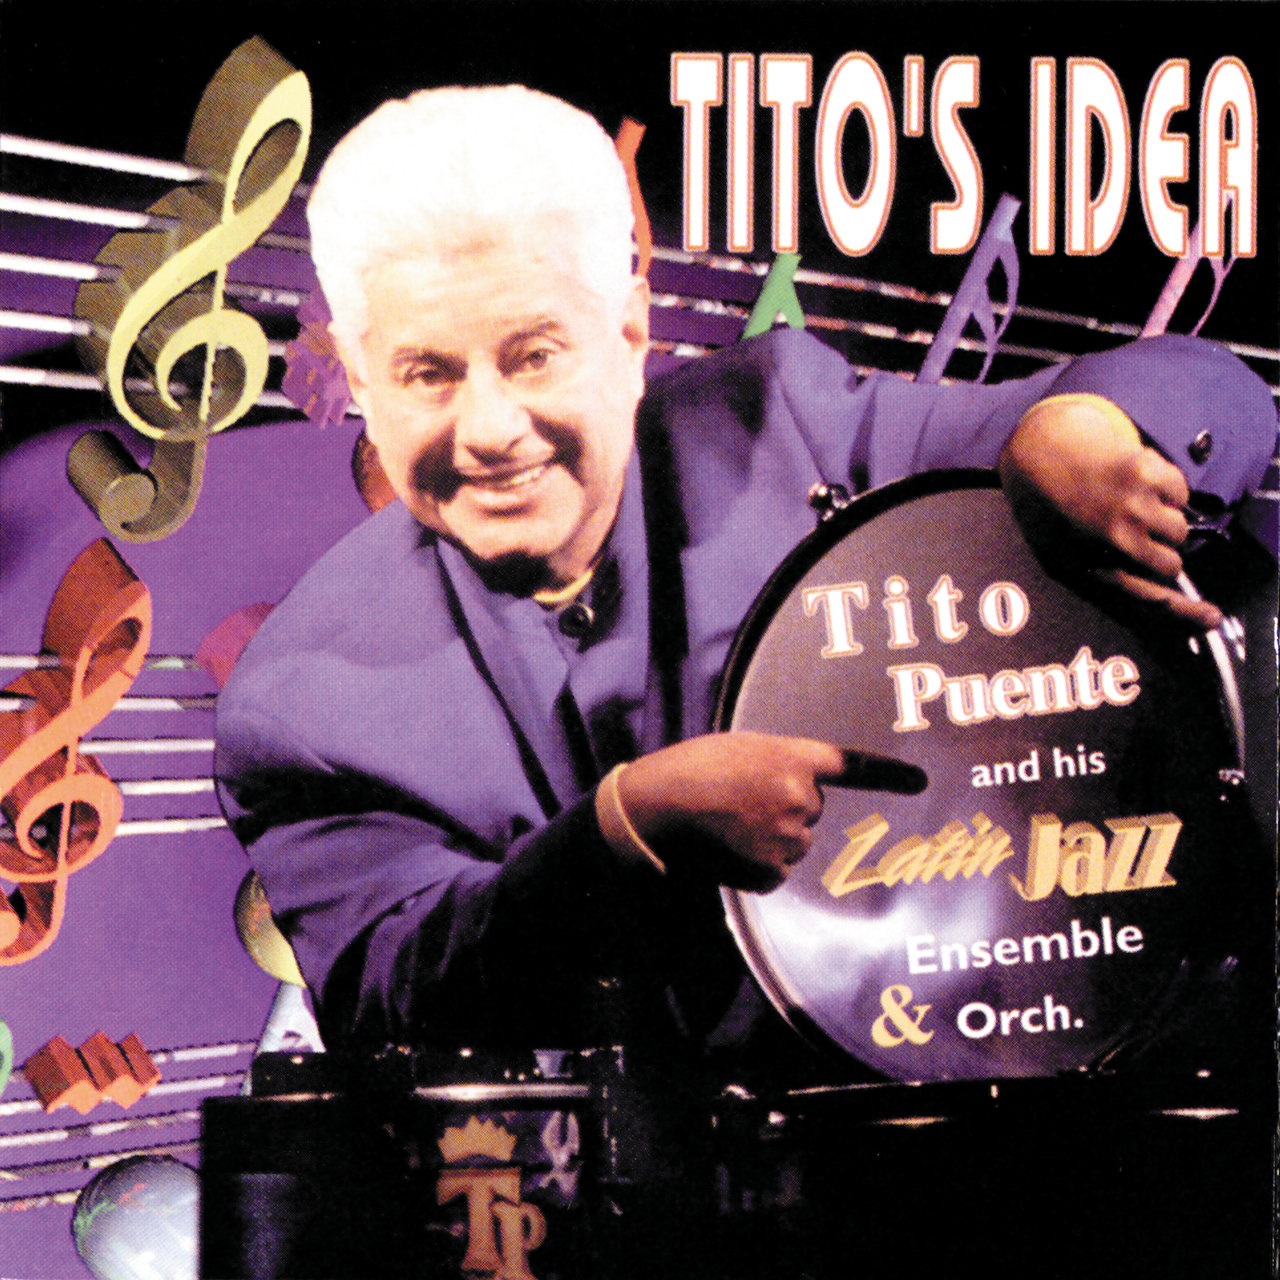 Tito’s Idea [1995]